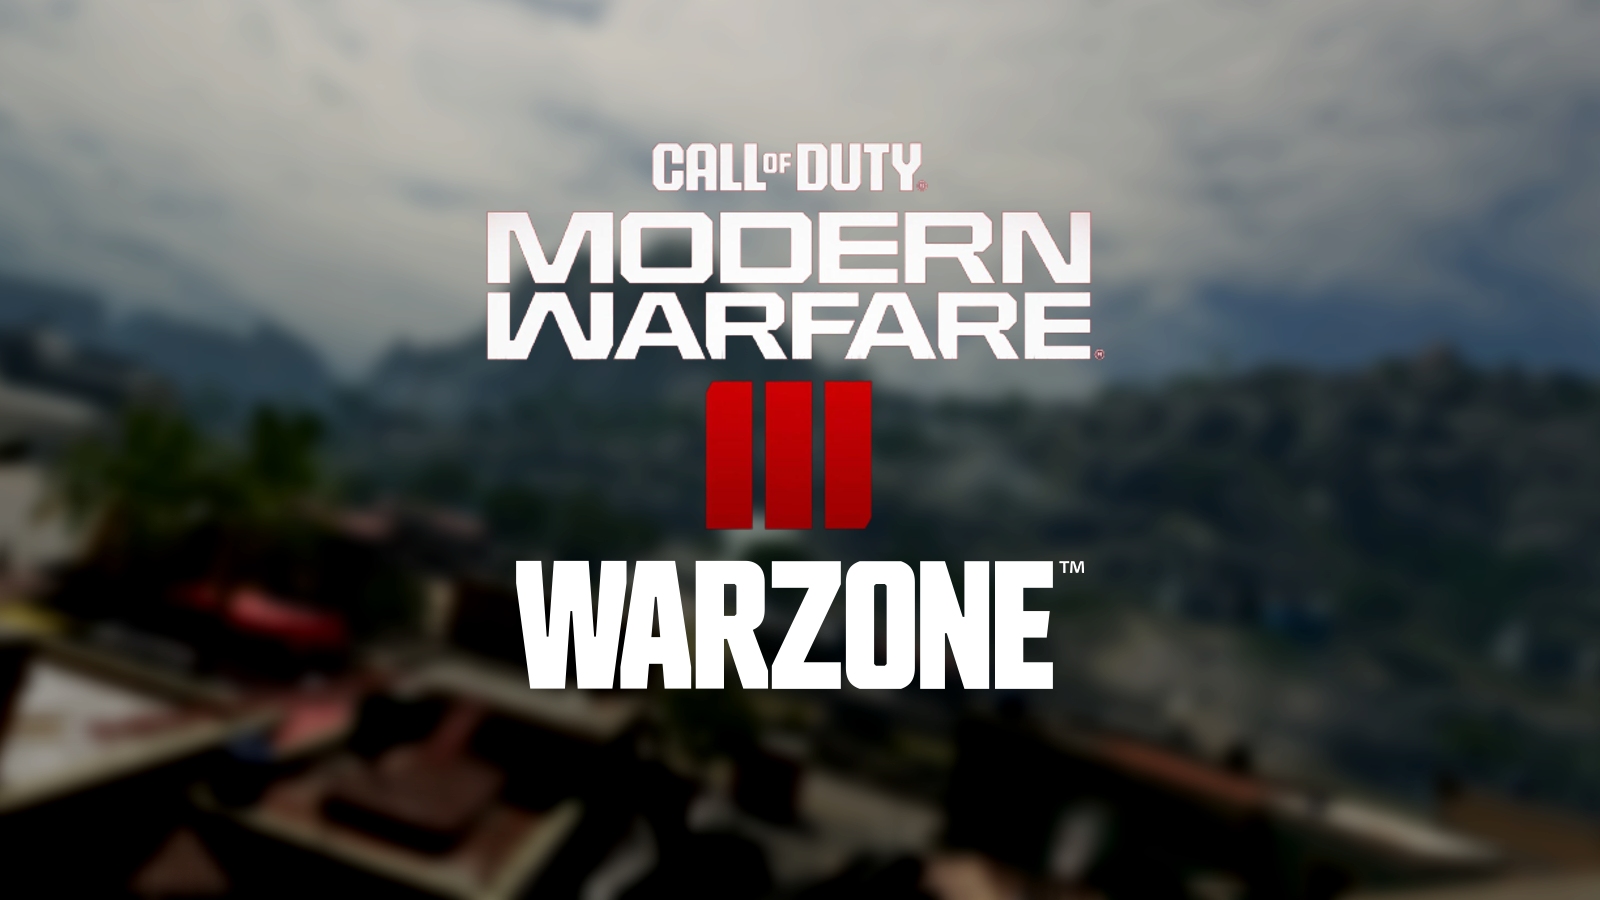 Logo Warfare 3 hiện đại với logo Warzone mới trên đỉnh của hình ảnh mờ của Mercado Las Almas